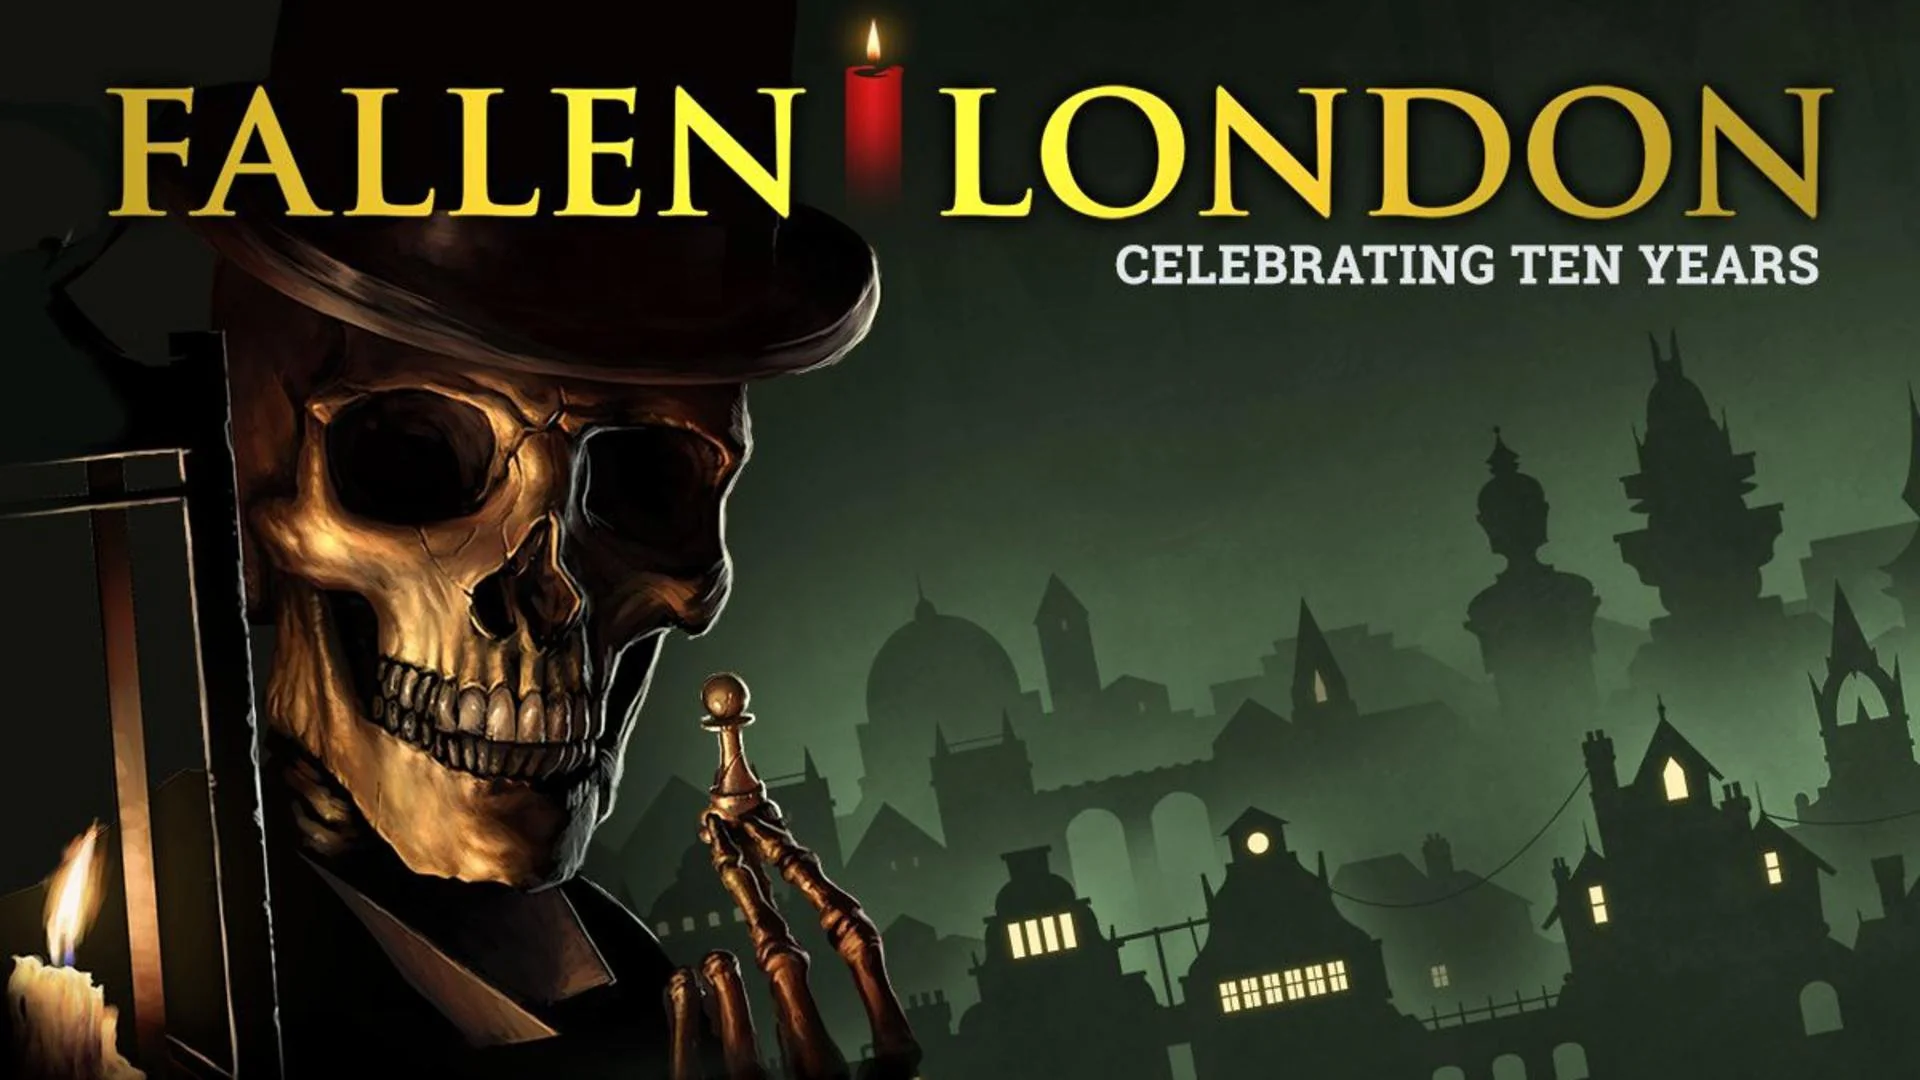 Play Fallen London!